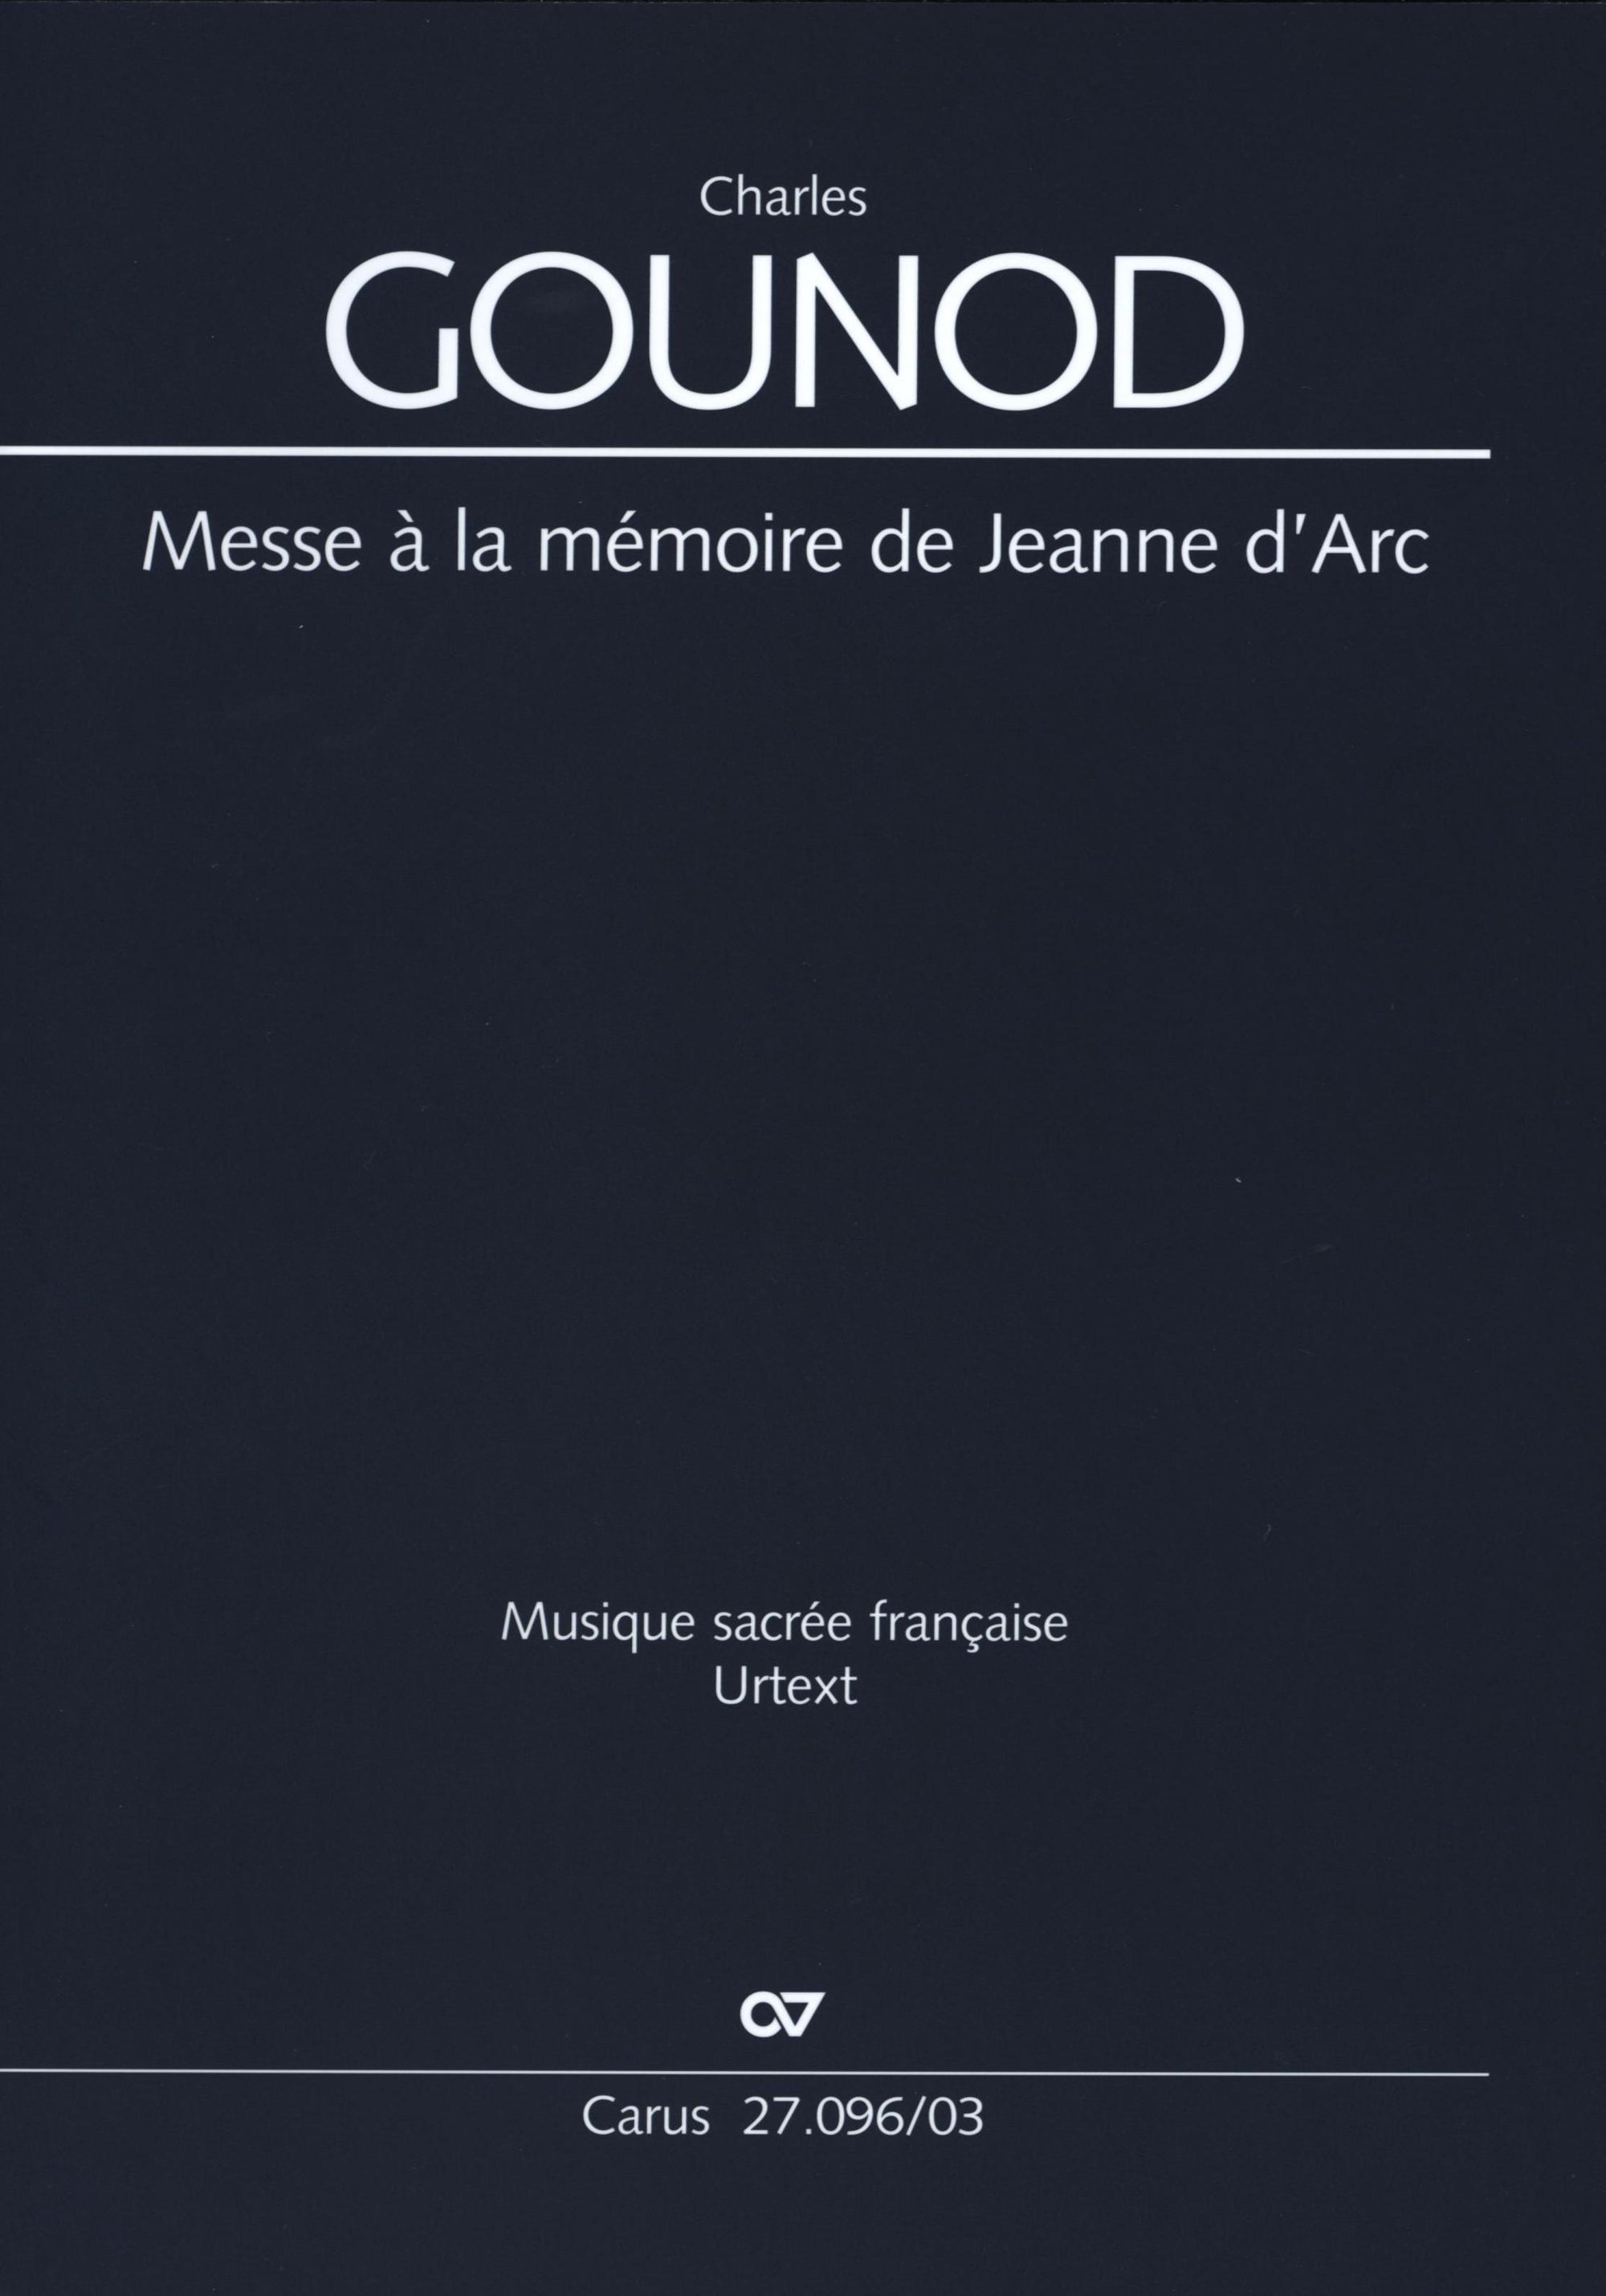 Gounod: Messe à la mémoire de Jeanne d'Arc, CG 74